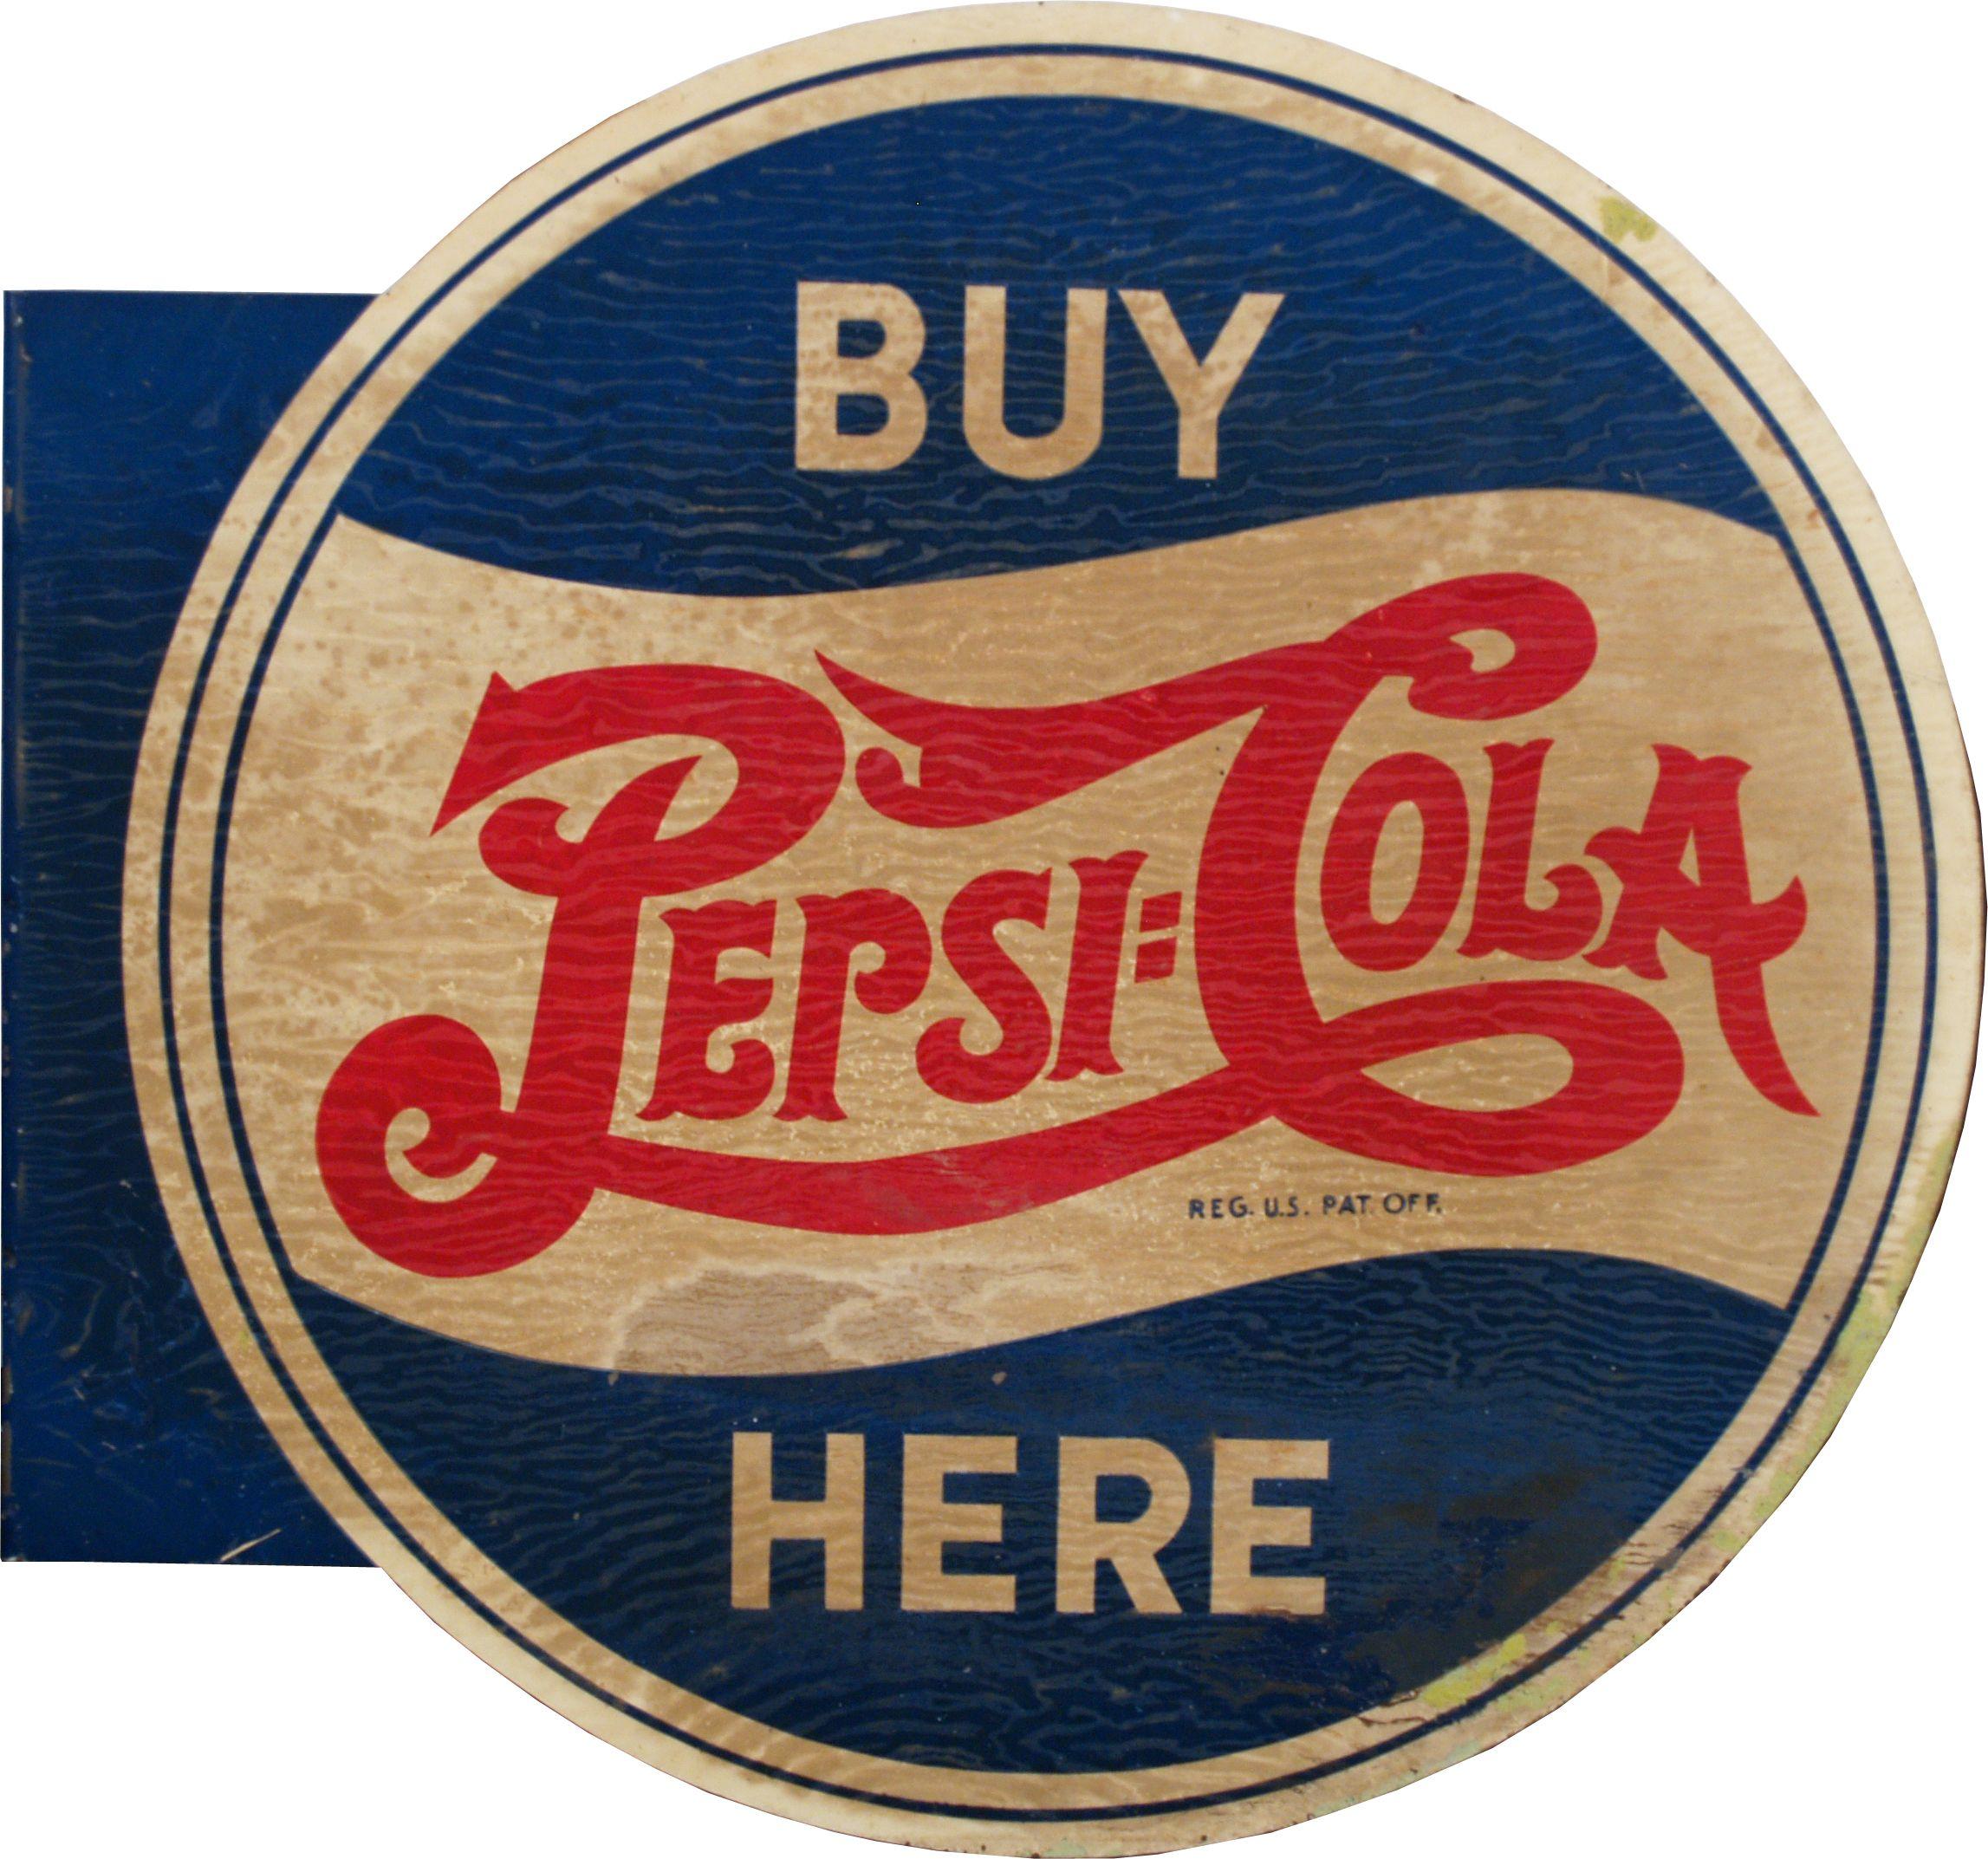 Vintage Pepsi Logo - Vintage Pepsi Logo. VCA. Vintage \Buy Pepsi Cola Here\ Double